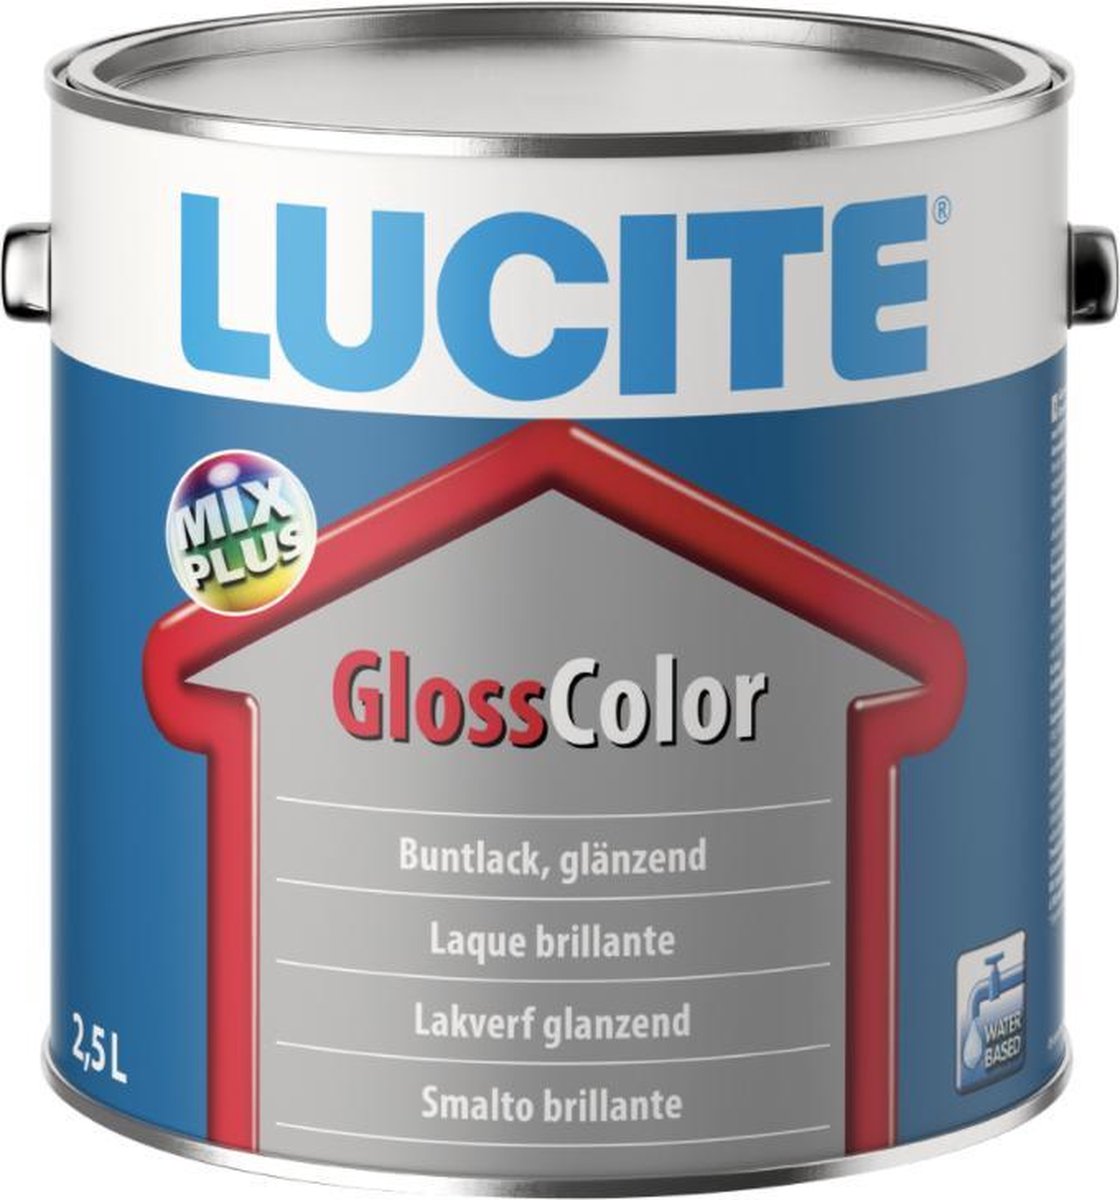 Lucitec Gloss color- Lakverf Glanzend-Wit 2.5l.-Glanzende en watergedragen kleurlak op basis van een speciale bindmiddelcombinatie. Voor zowel binnen als buiten.